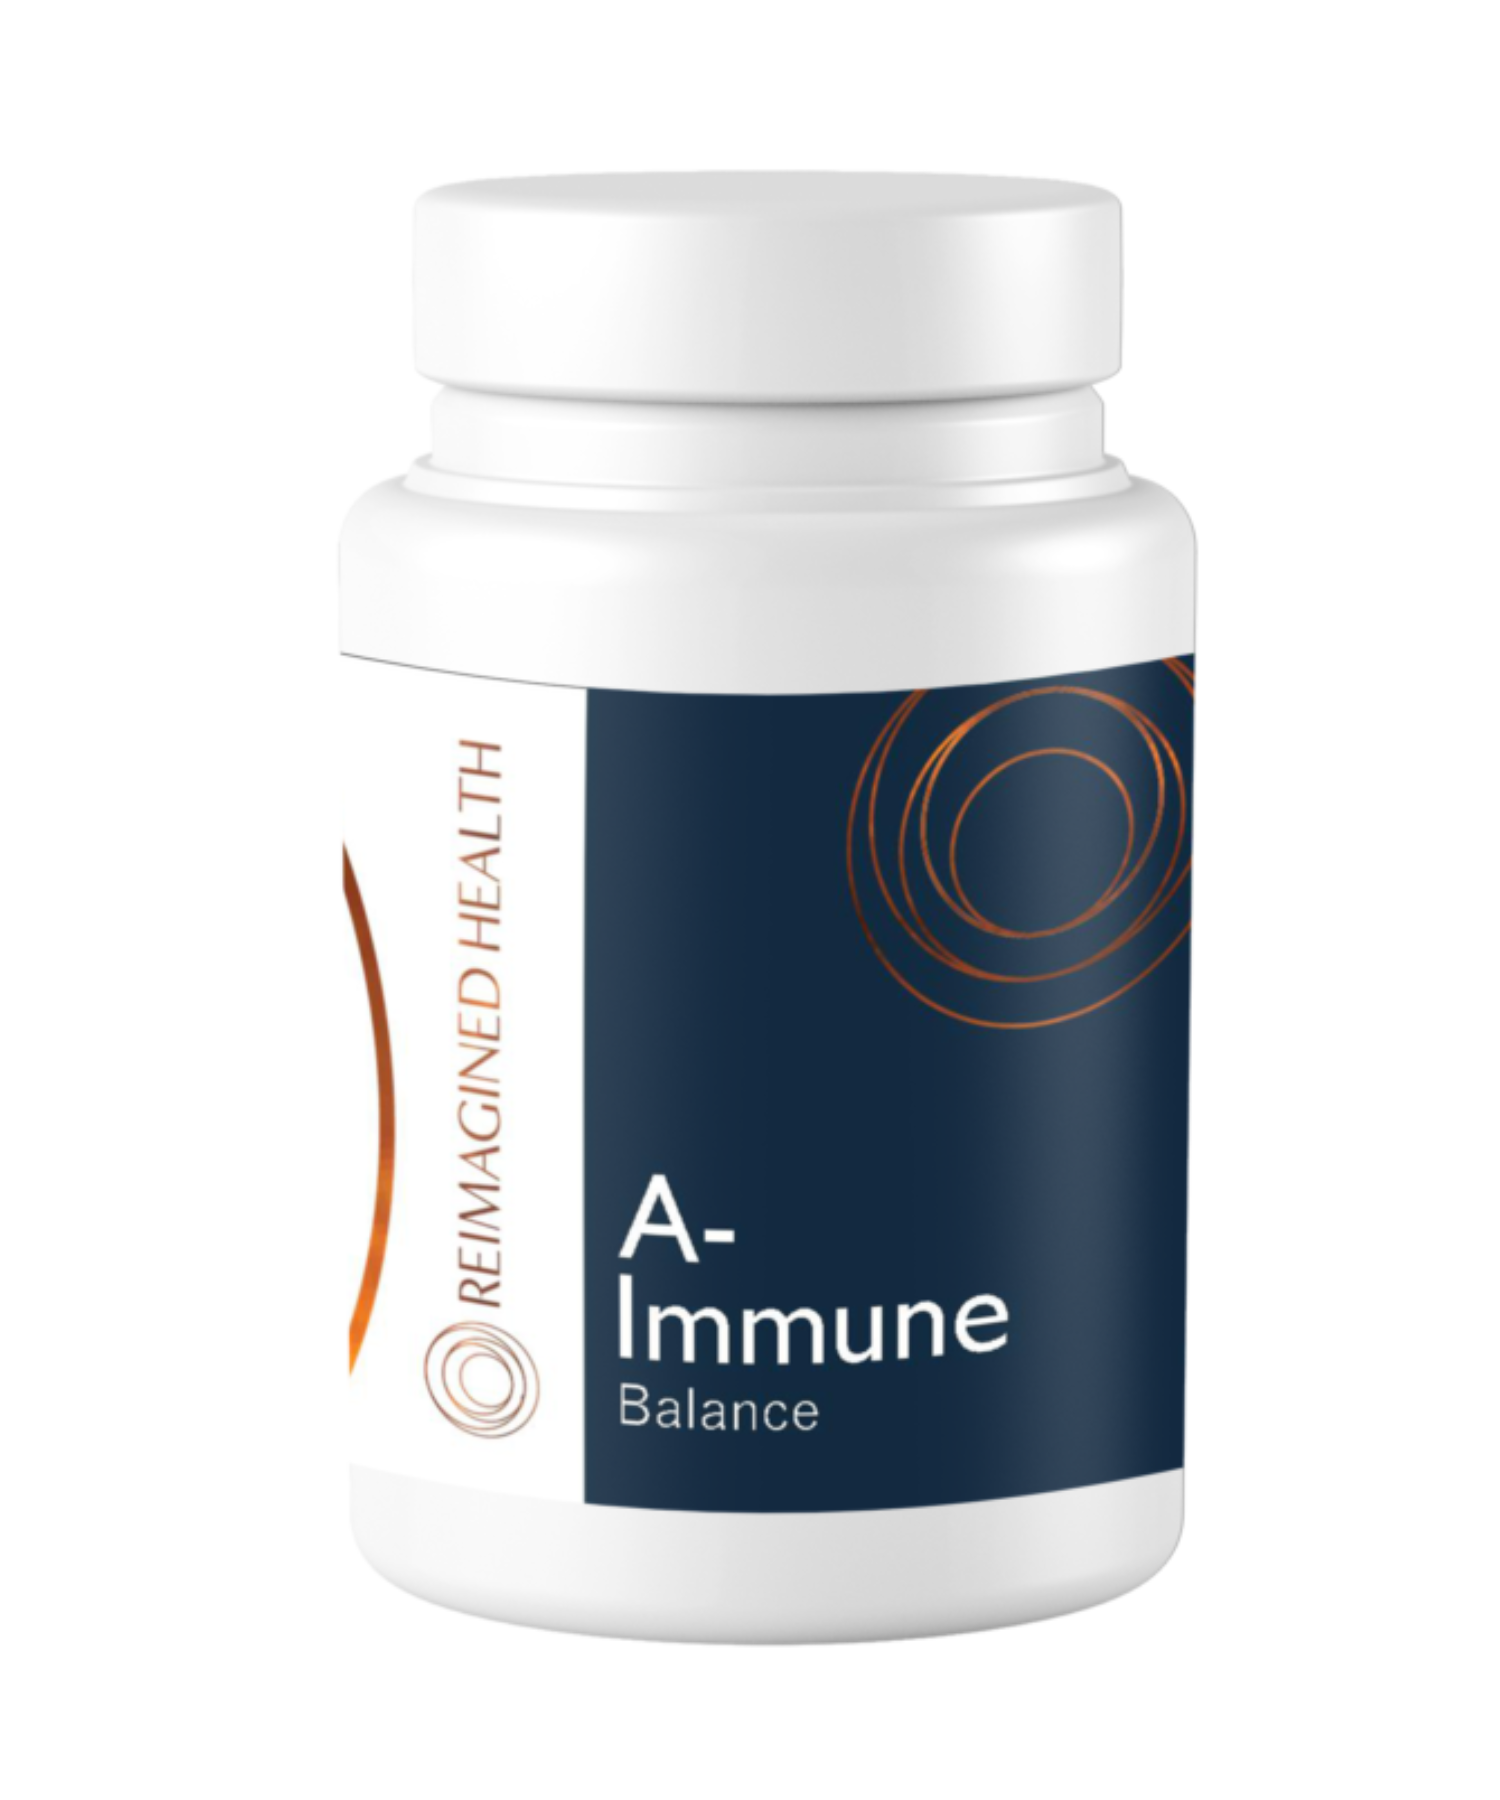 Immune-Antiox-C306-1.png